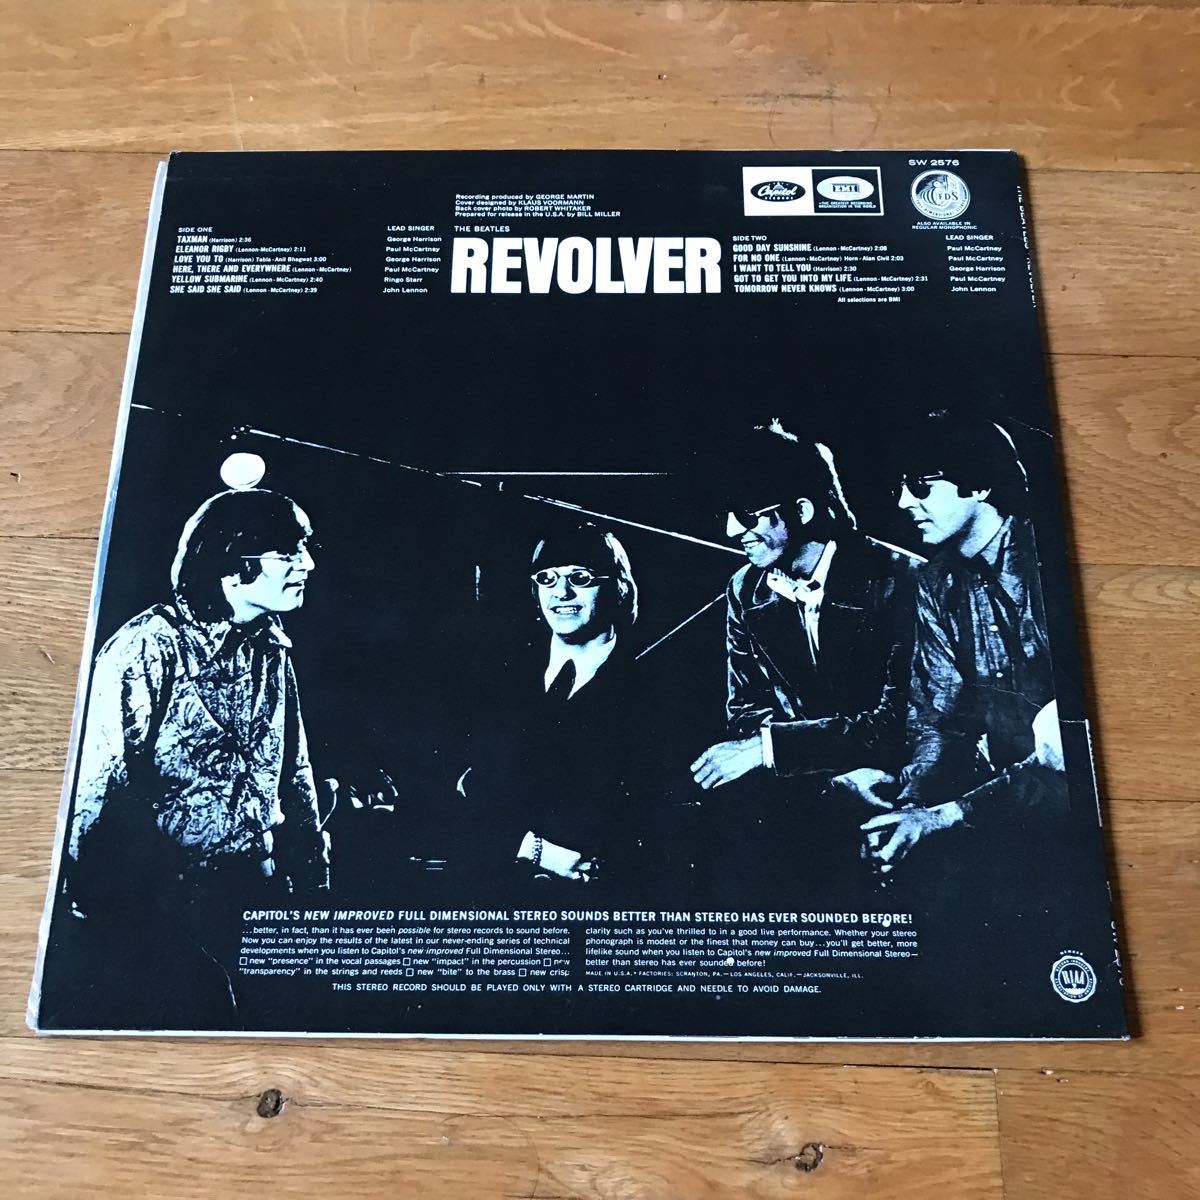 THE BEATLES ビートルズ REVOLVER リボルバー レコード アメリカ us-